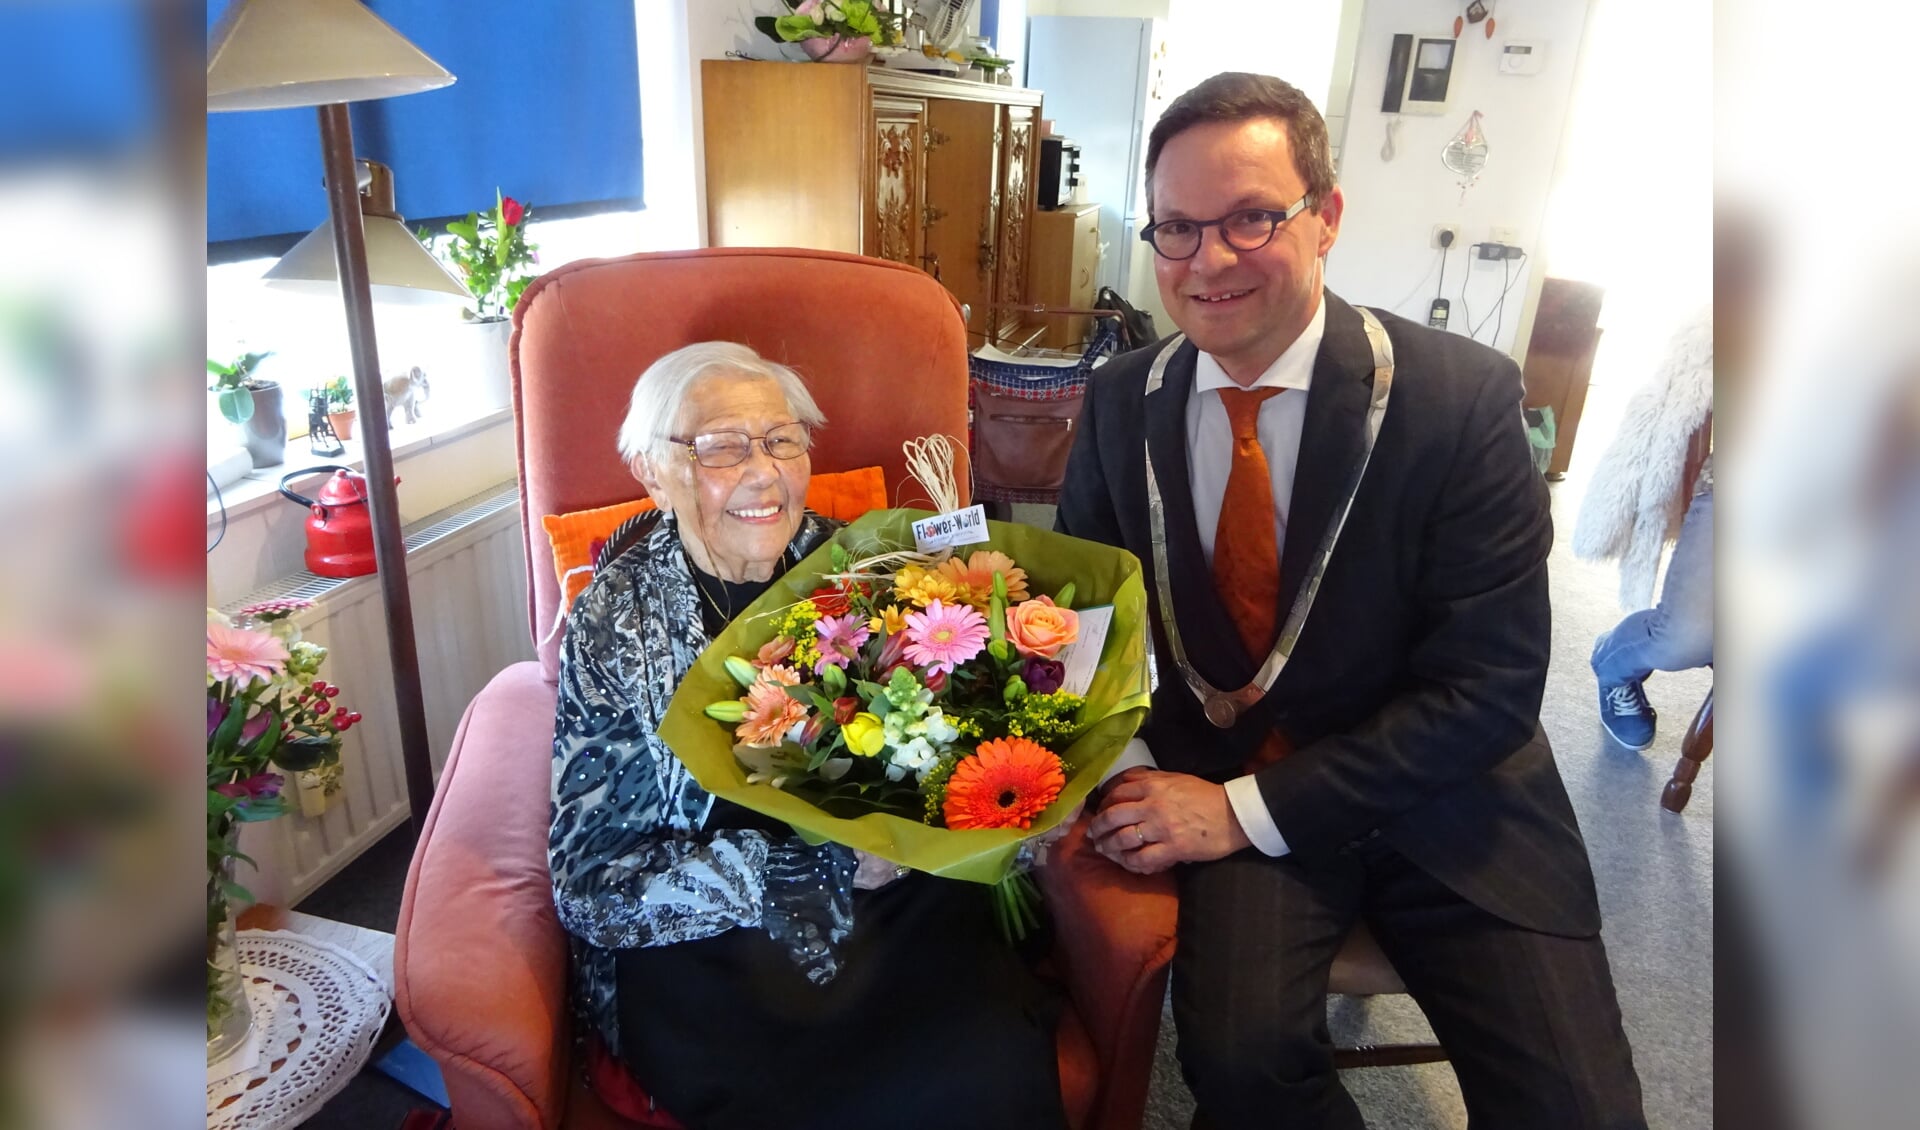 Burgemeester Van den Tillaar brengt een verjaardagsbezoek aan tante Tilly. FOTO MARIELJA TEN BRUGGENCATE